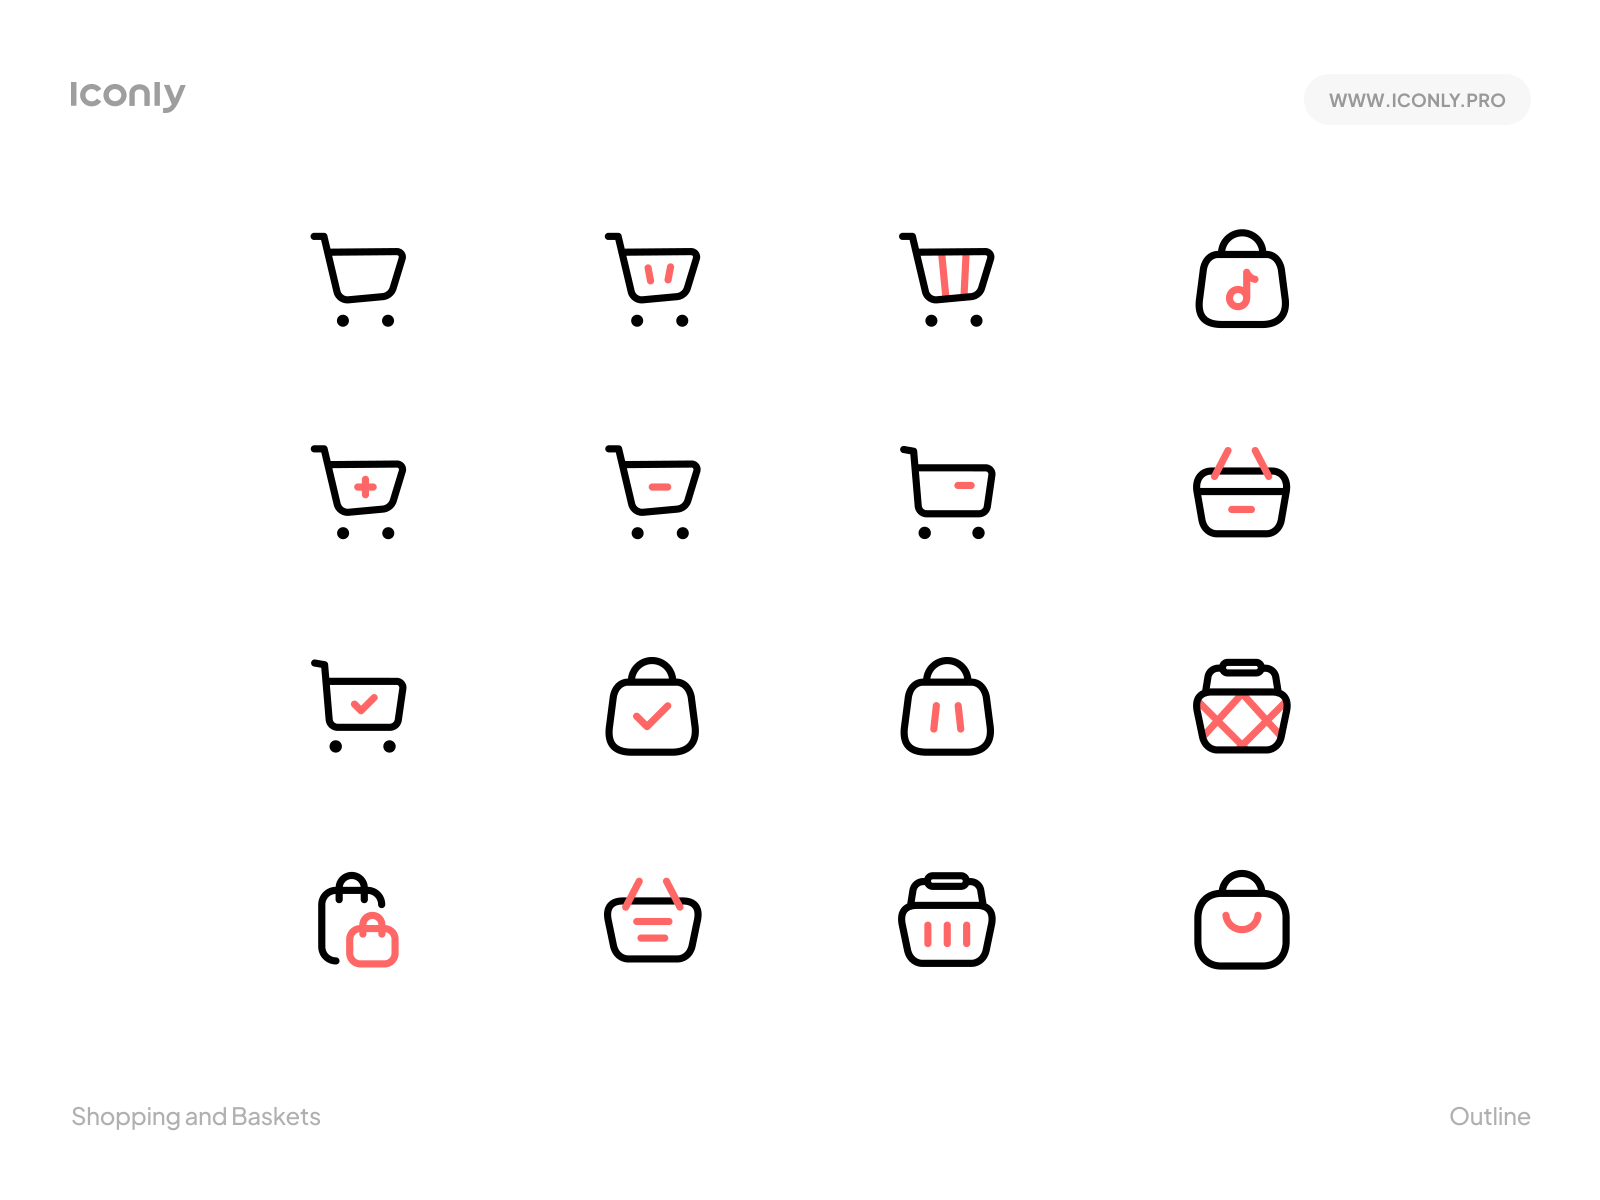 Iconly Pro - Shopping and Baskets 🛍 🛒 basket bundle design flaticon icon icondesign iconly iconography iconpack icons iconset illustration pack pro shop shopping ui ux